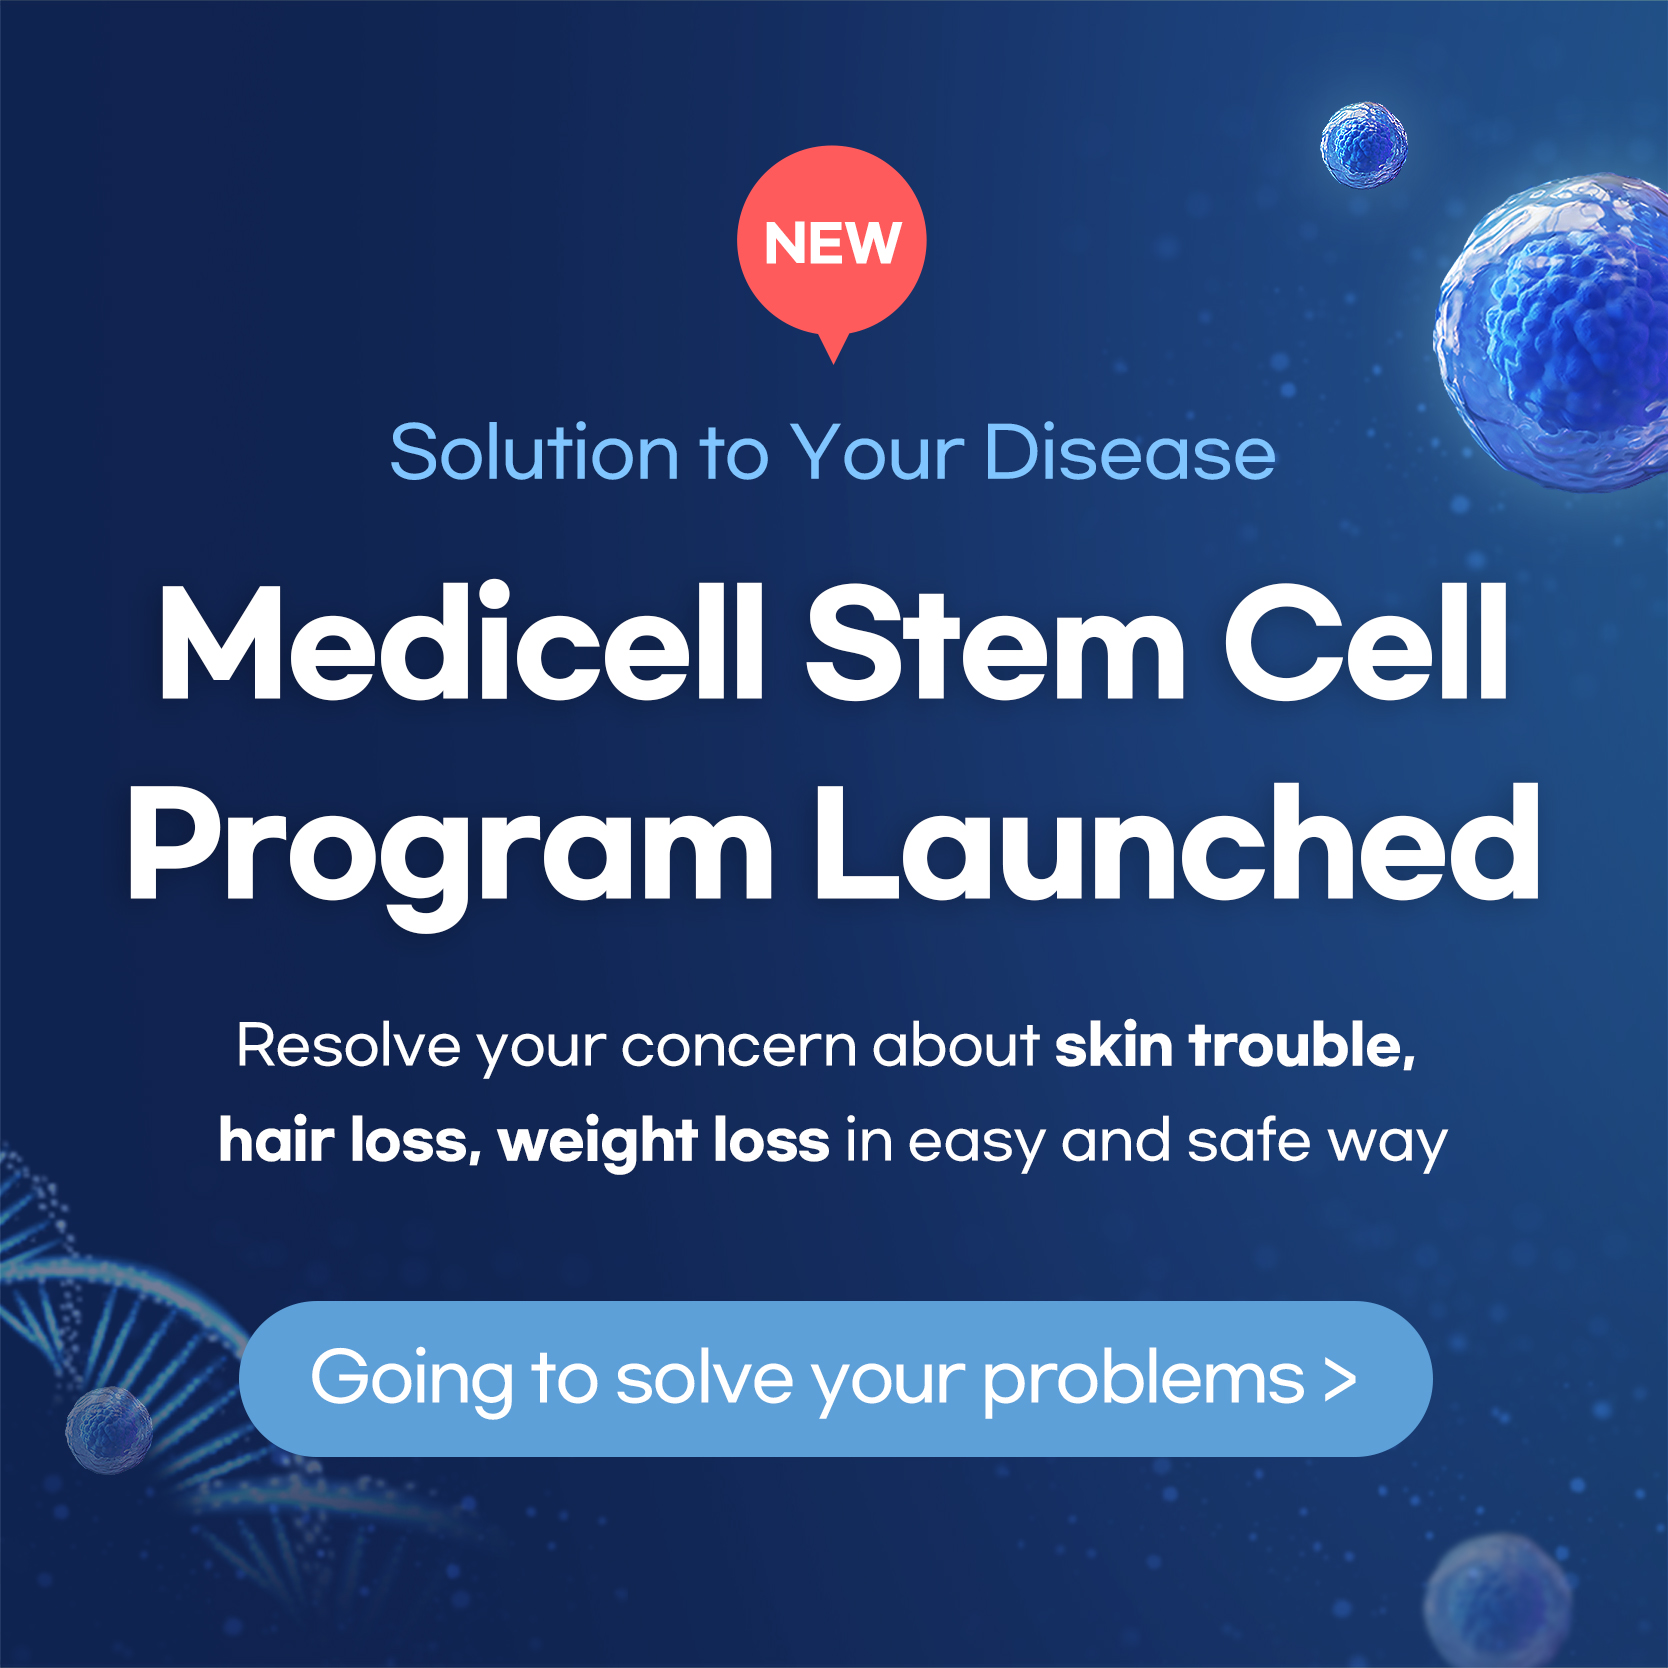 Medicell stem cell